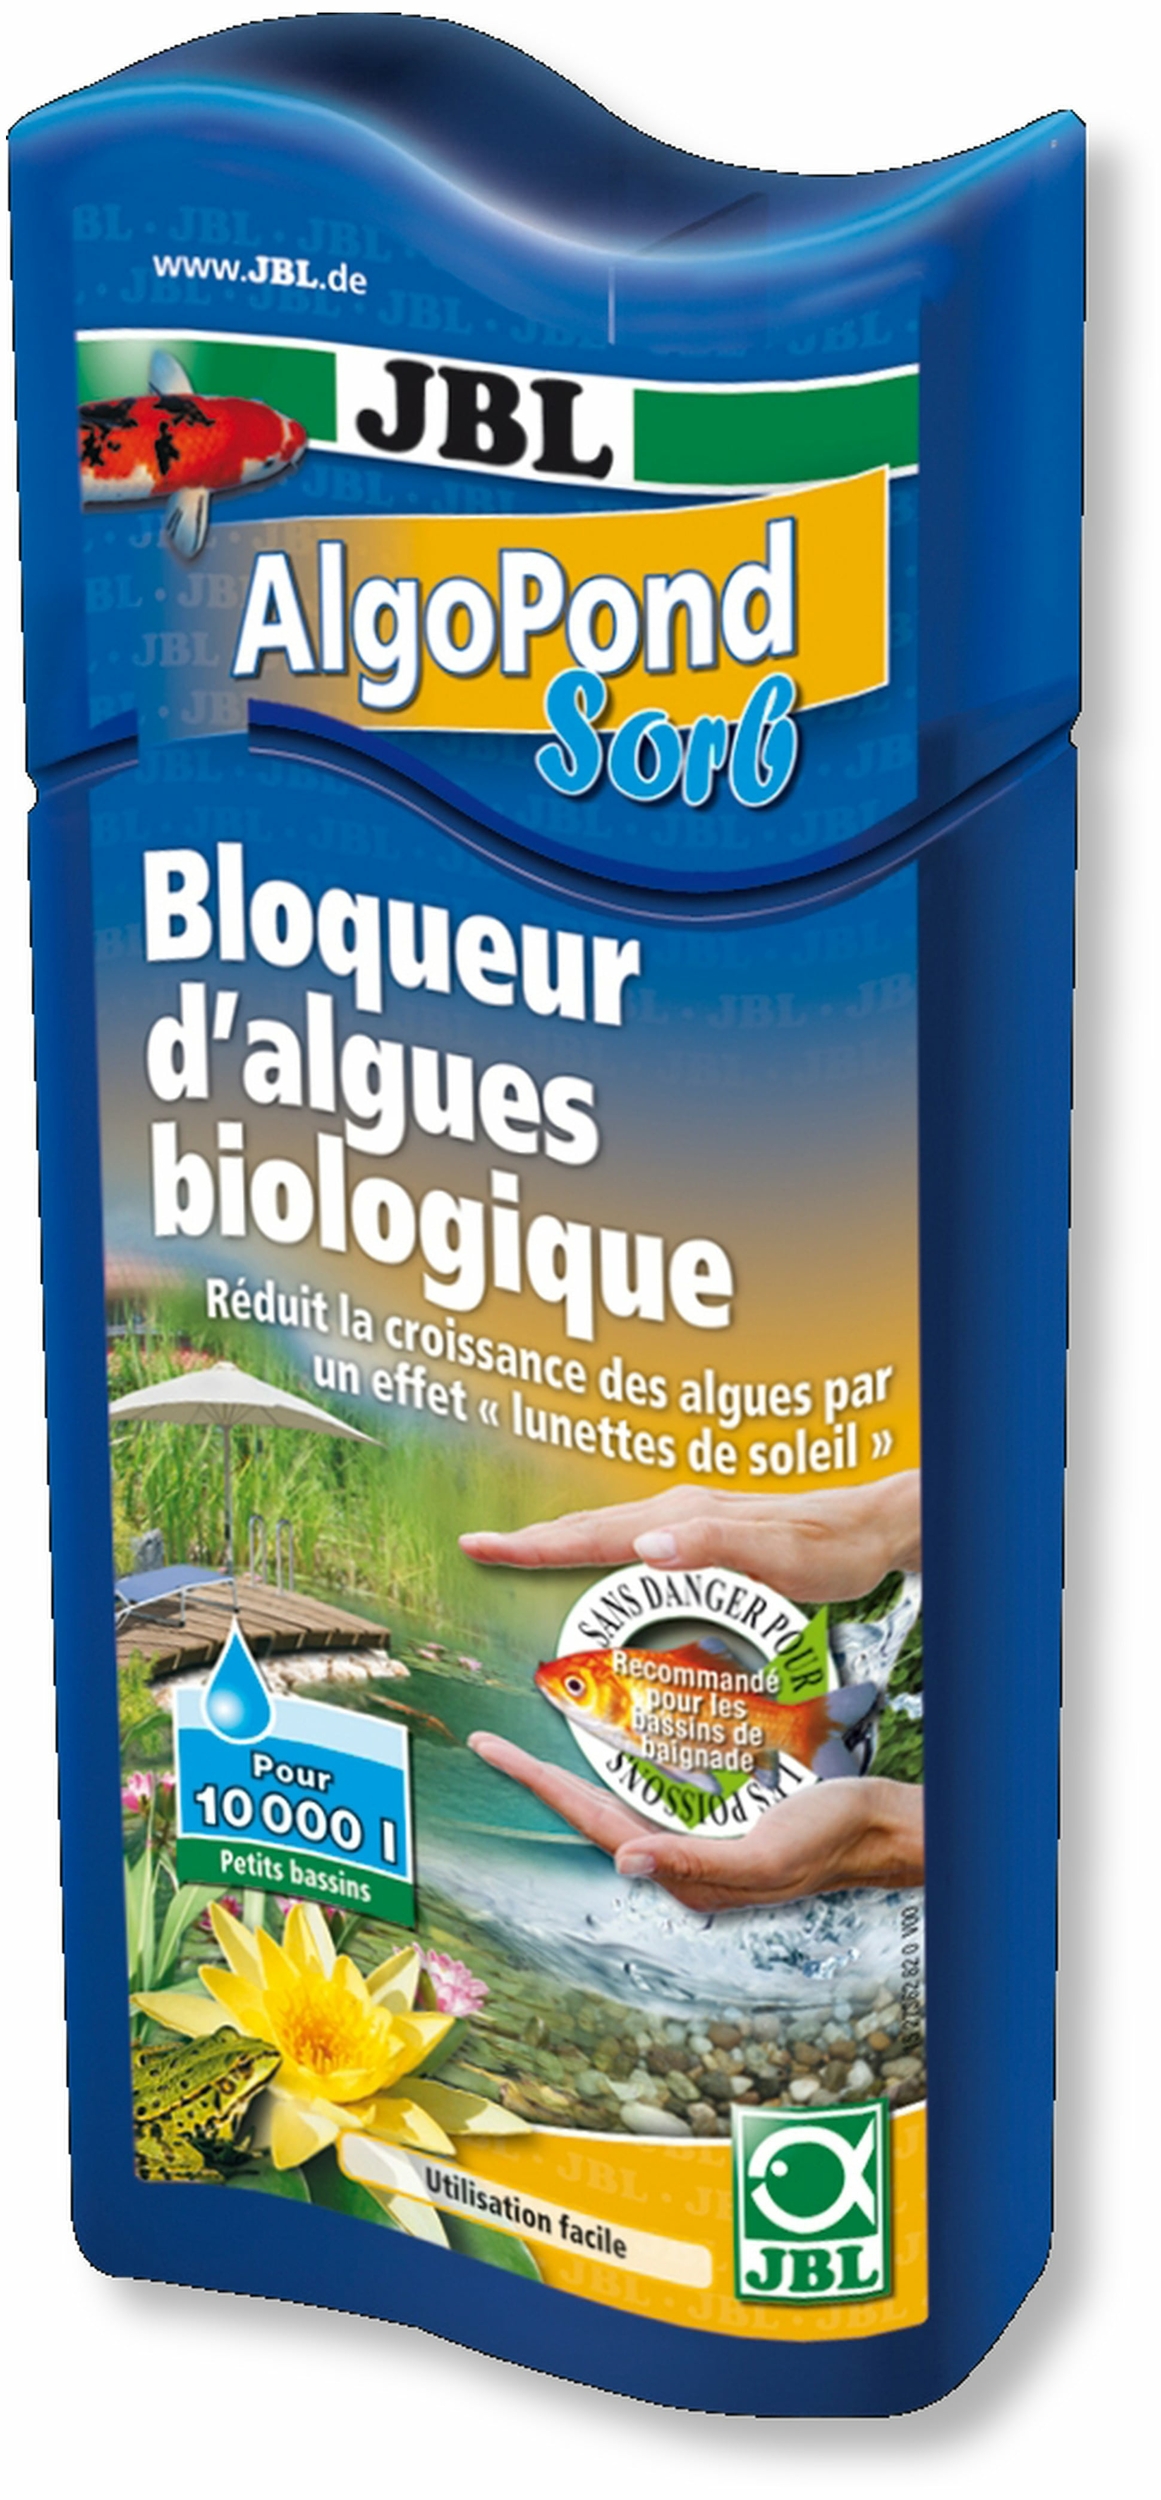 jbl-algopond-sorb-500-ml-bloqueur-biologique-contre-les-algues-pour-la-reduction-de-leur-croissance-min